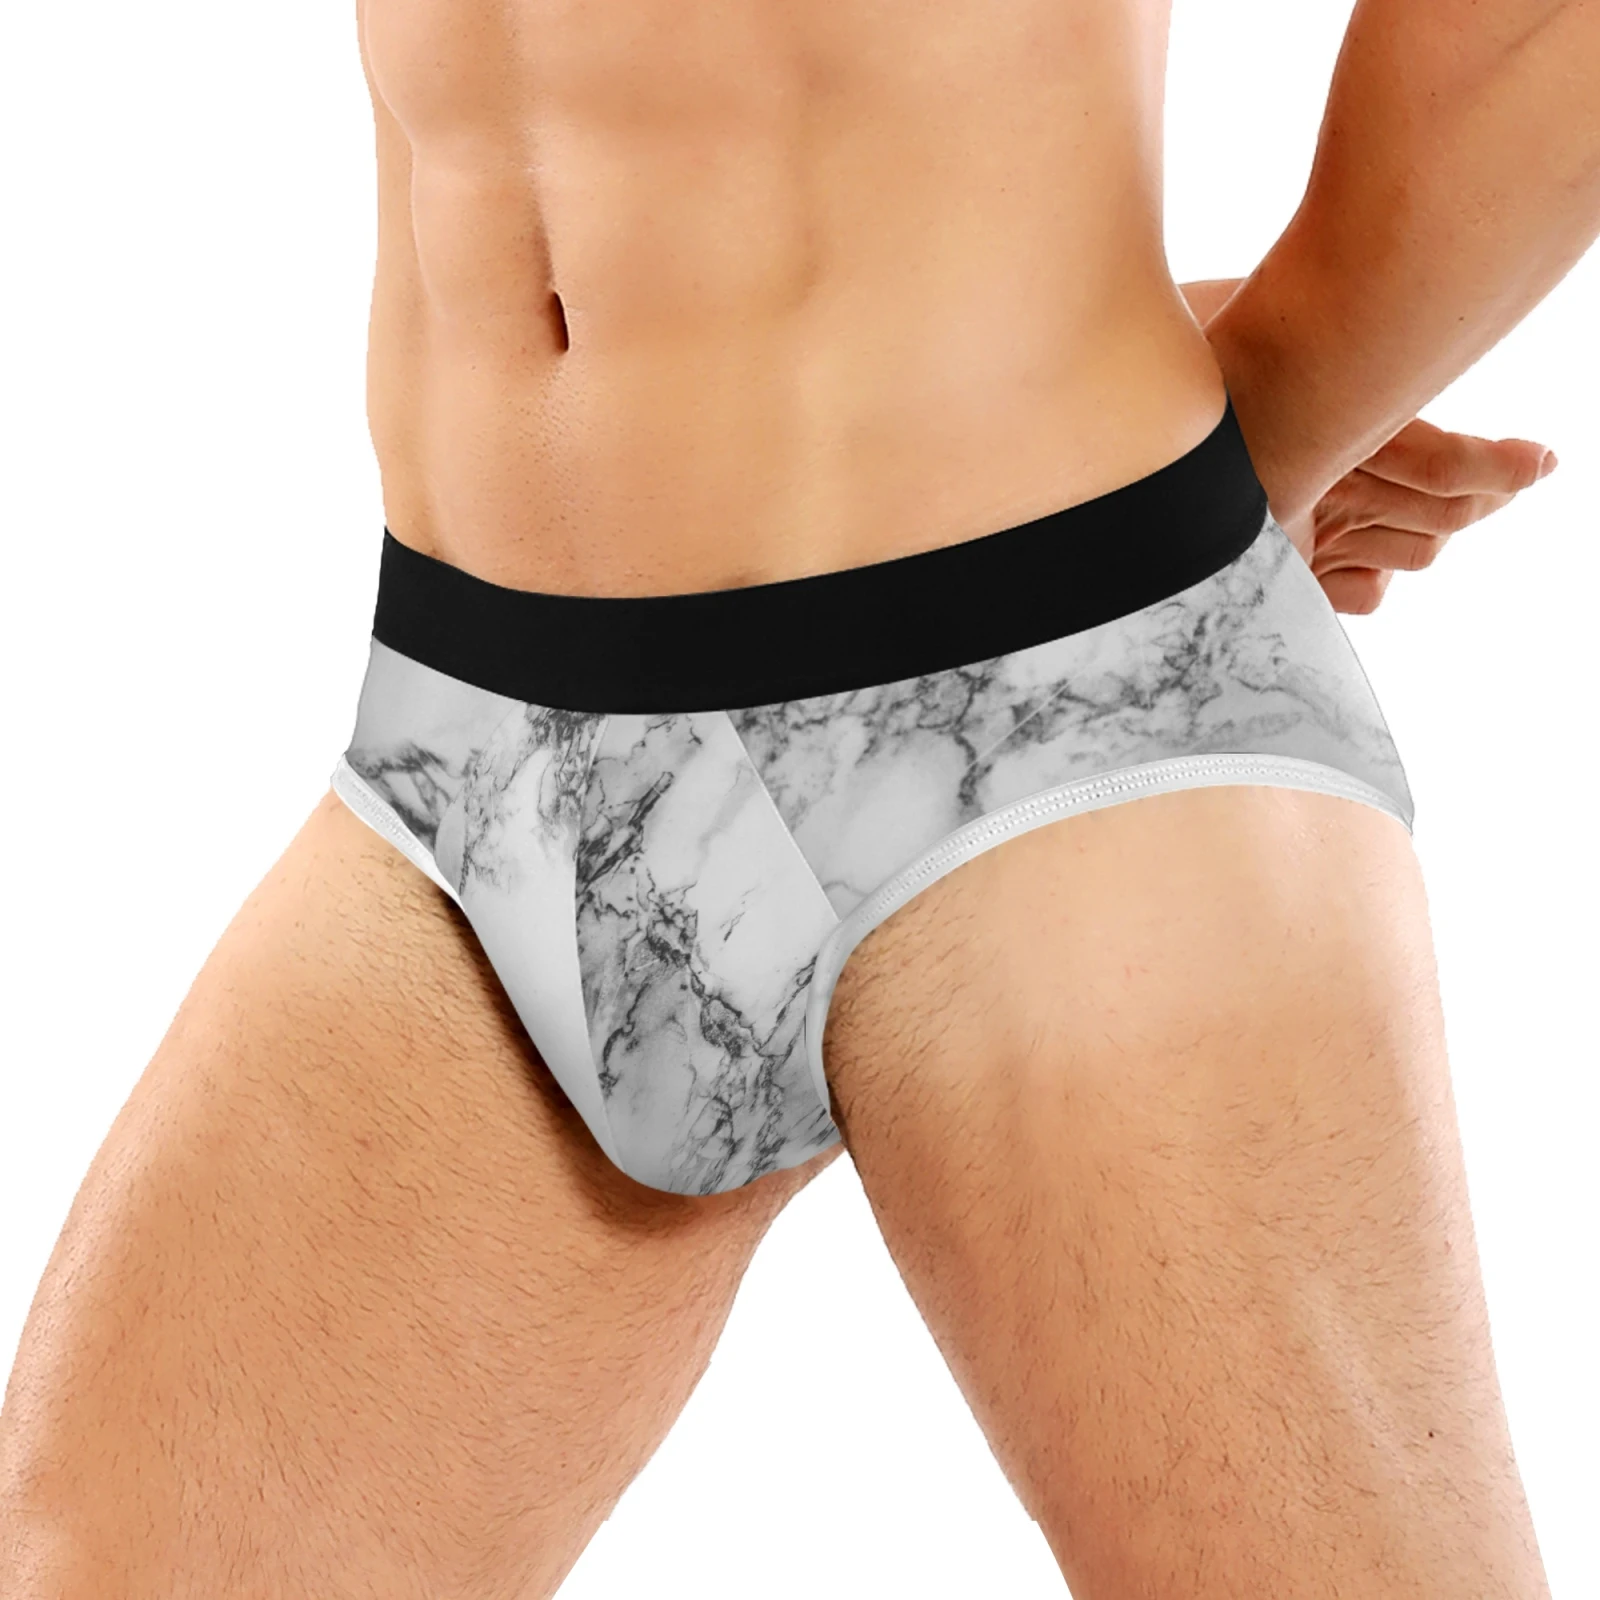 custom print male shorts classic panties